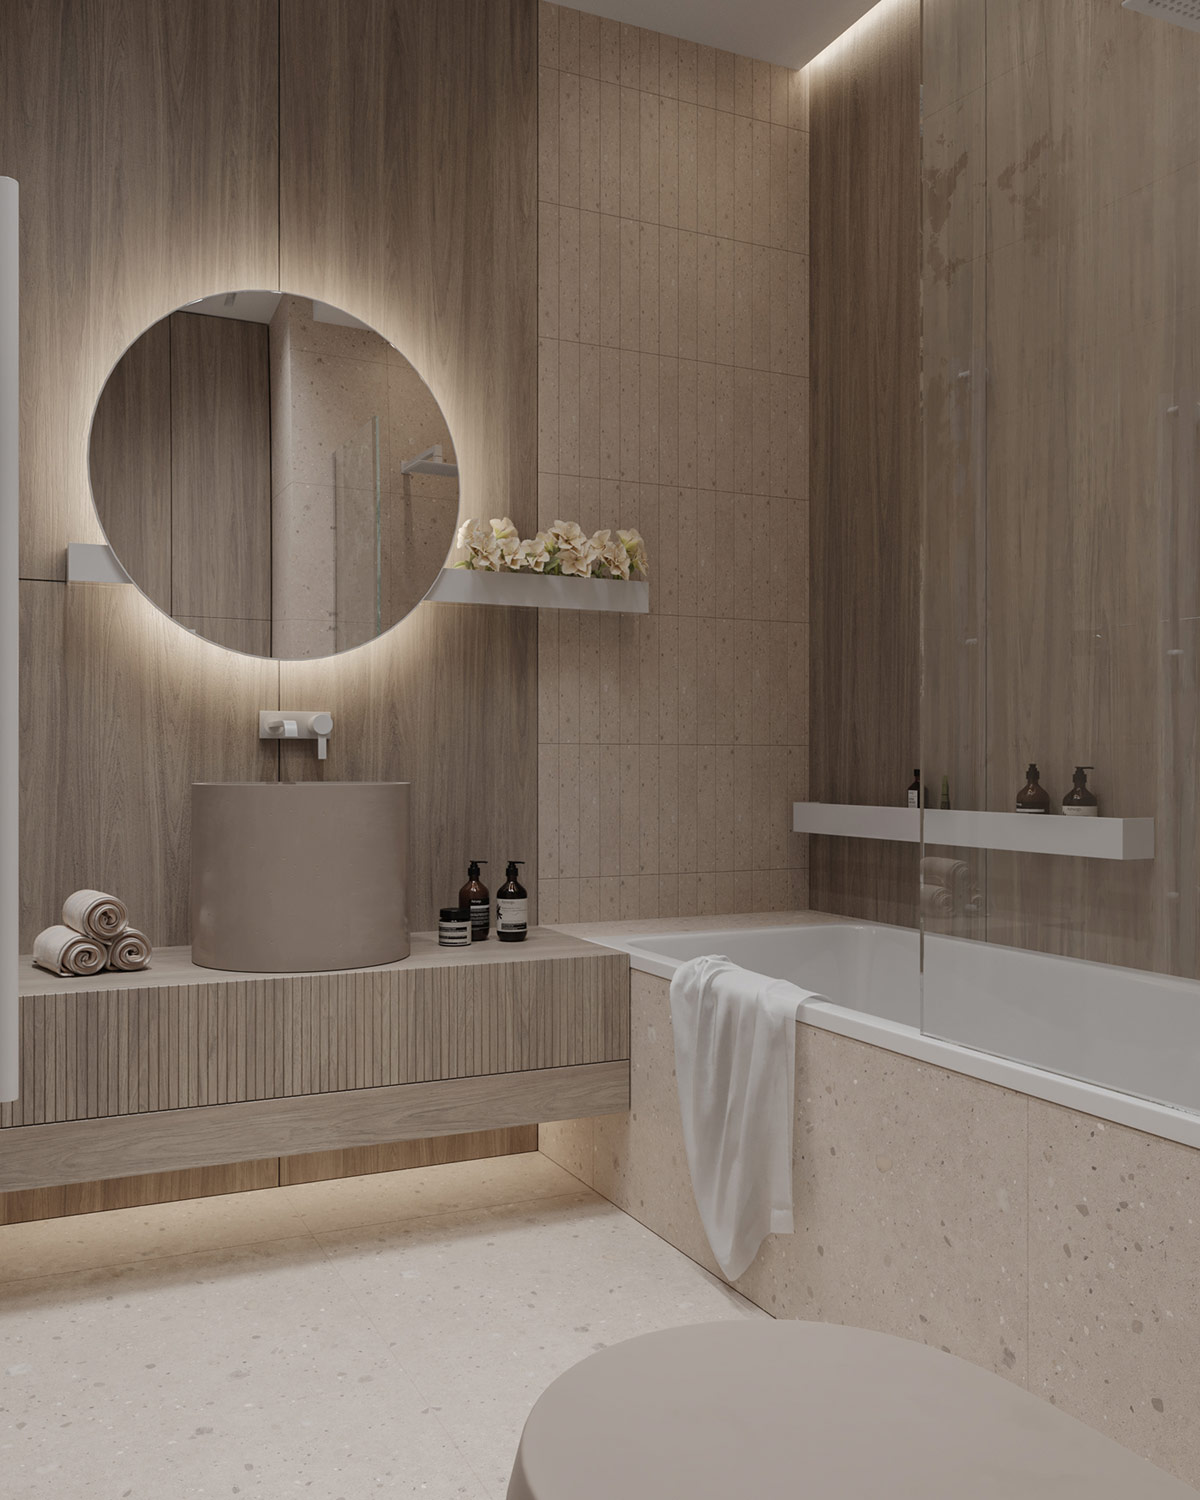 Bên trong phòng tắm, đồ nội thất đặt thiết kế riêng để tận dụng tối đa kích thước của căn phòng. Một bồn rửa hình trụ sâu lòng kết hợp tủ lưu trữ gắn tường, đây là một sự phù hợp tùy chỉnh cho khoảng cách giữa bồn tắm và tường vào phòng tắm.